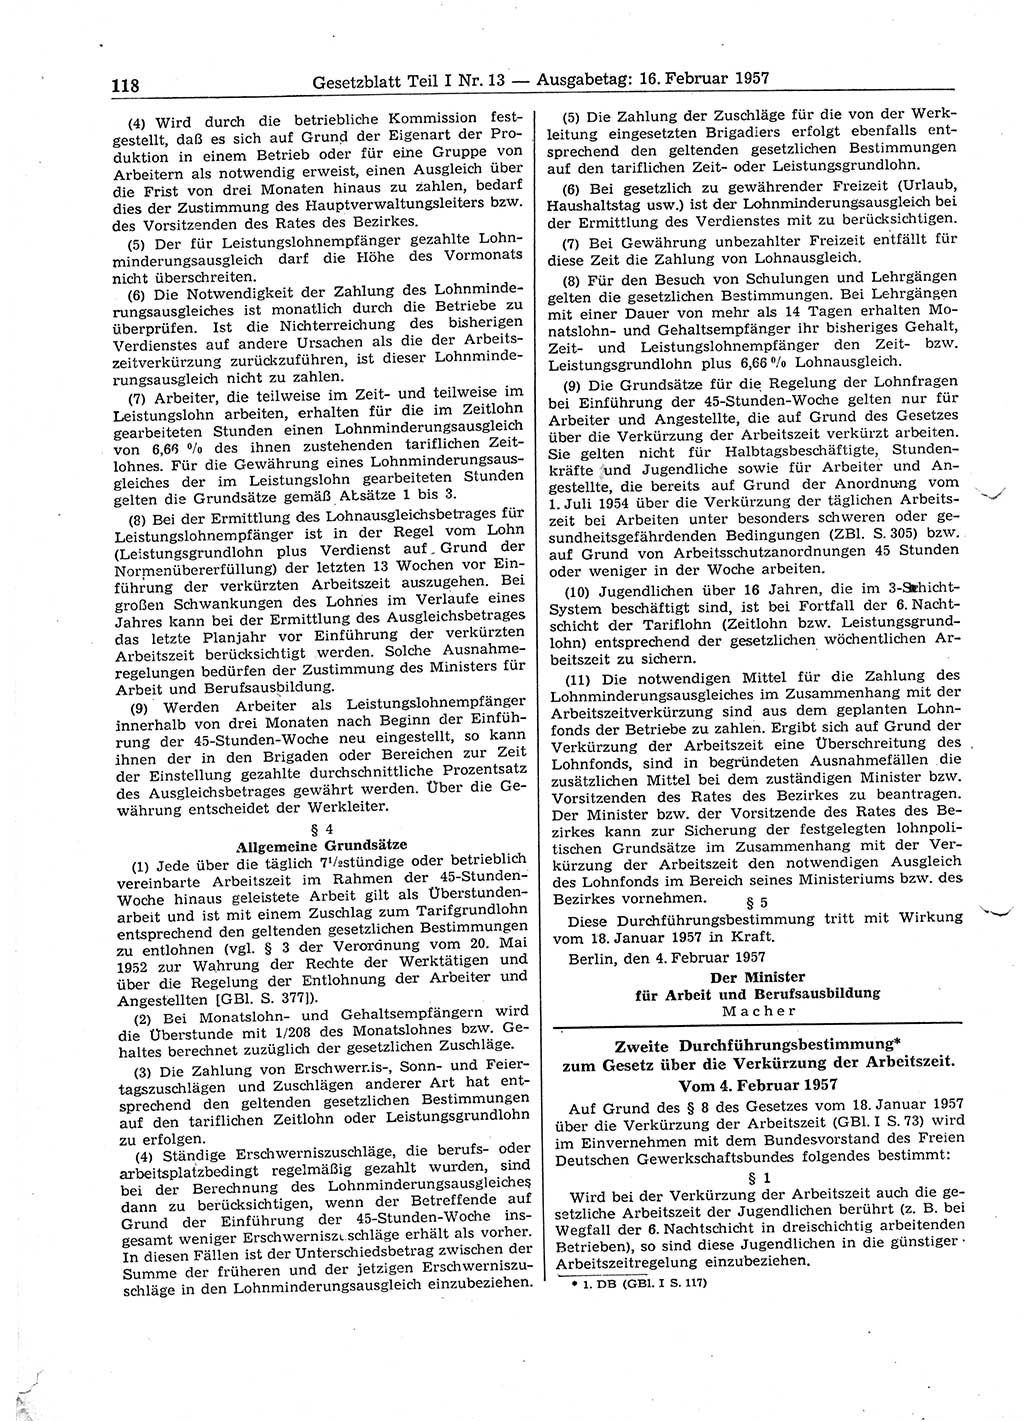 Gesetzblatt (GBl.) der Deutschen Demokratischen Republik (DDR) Teil Ⅰ 1957, Seite 118 (GBl. DDR Ⅰ 1957, S. 118)